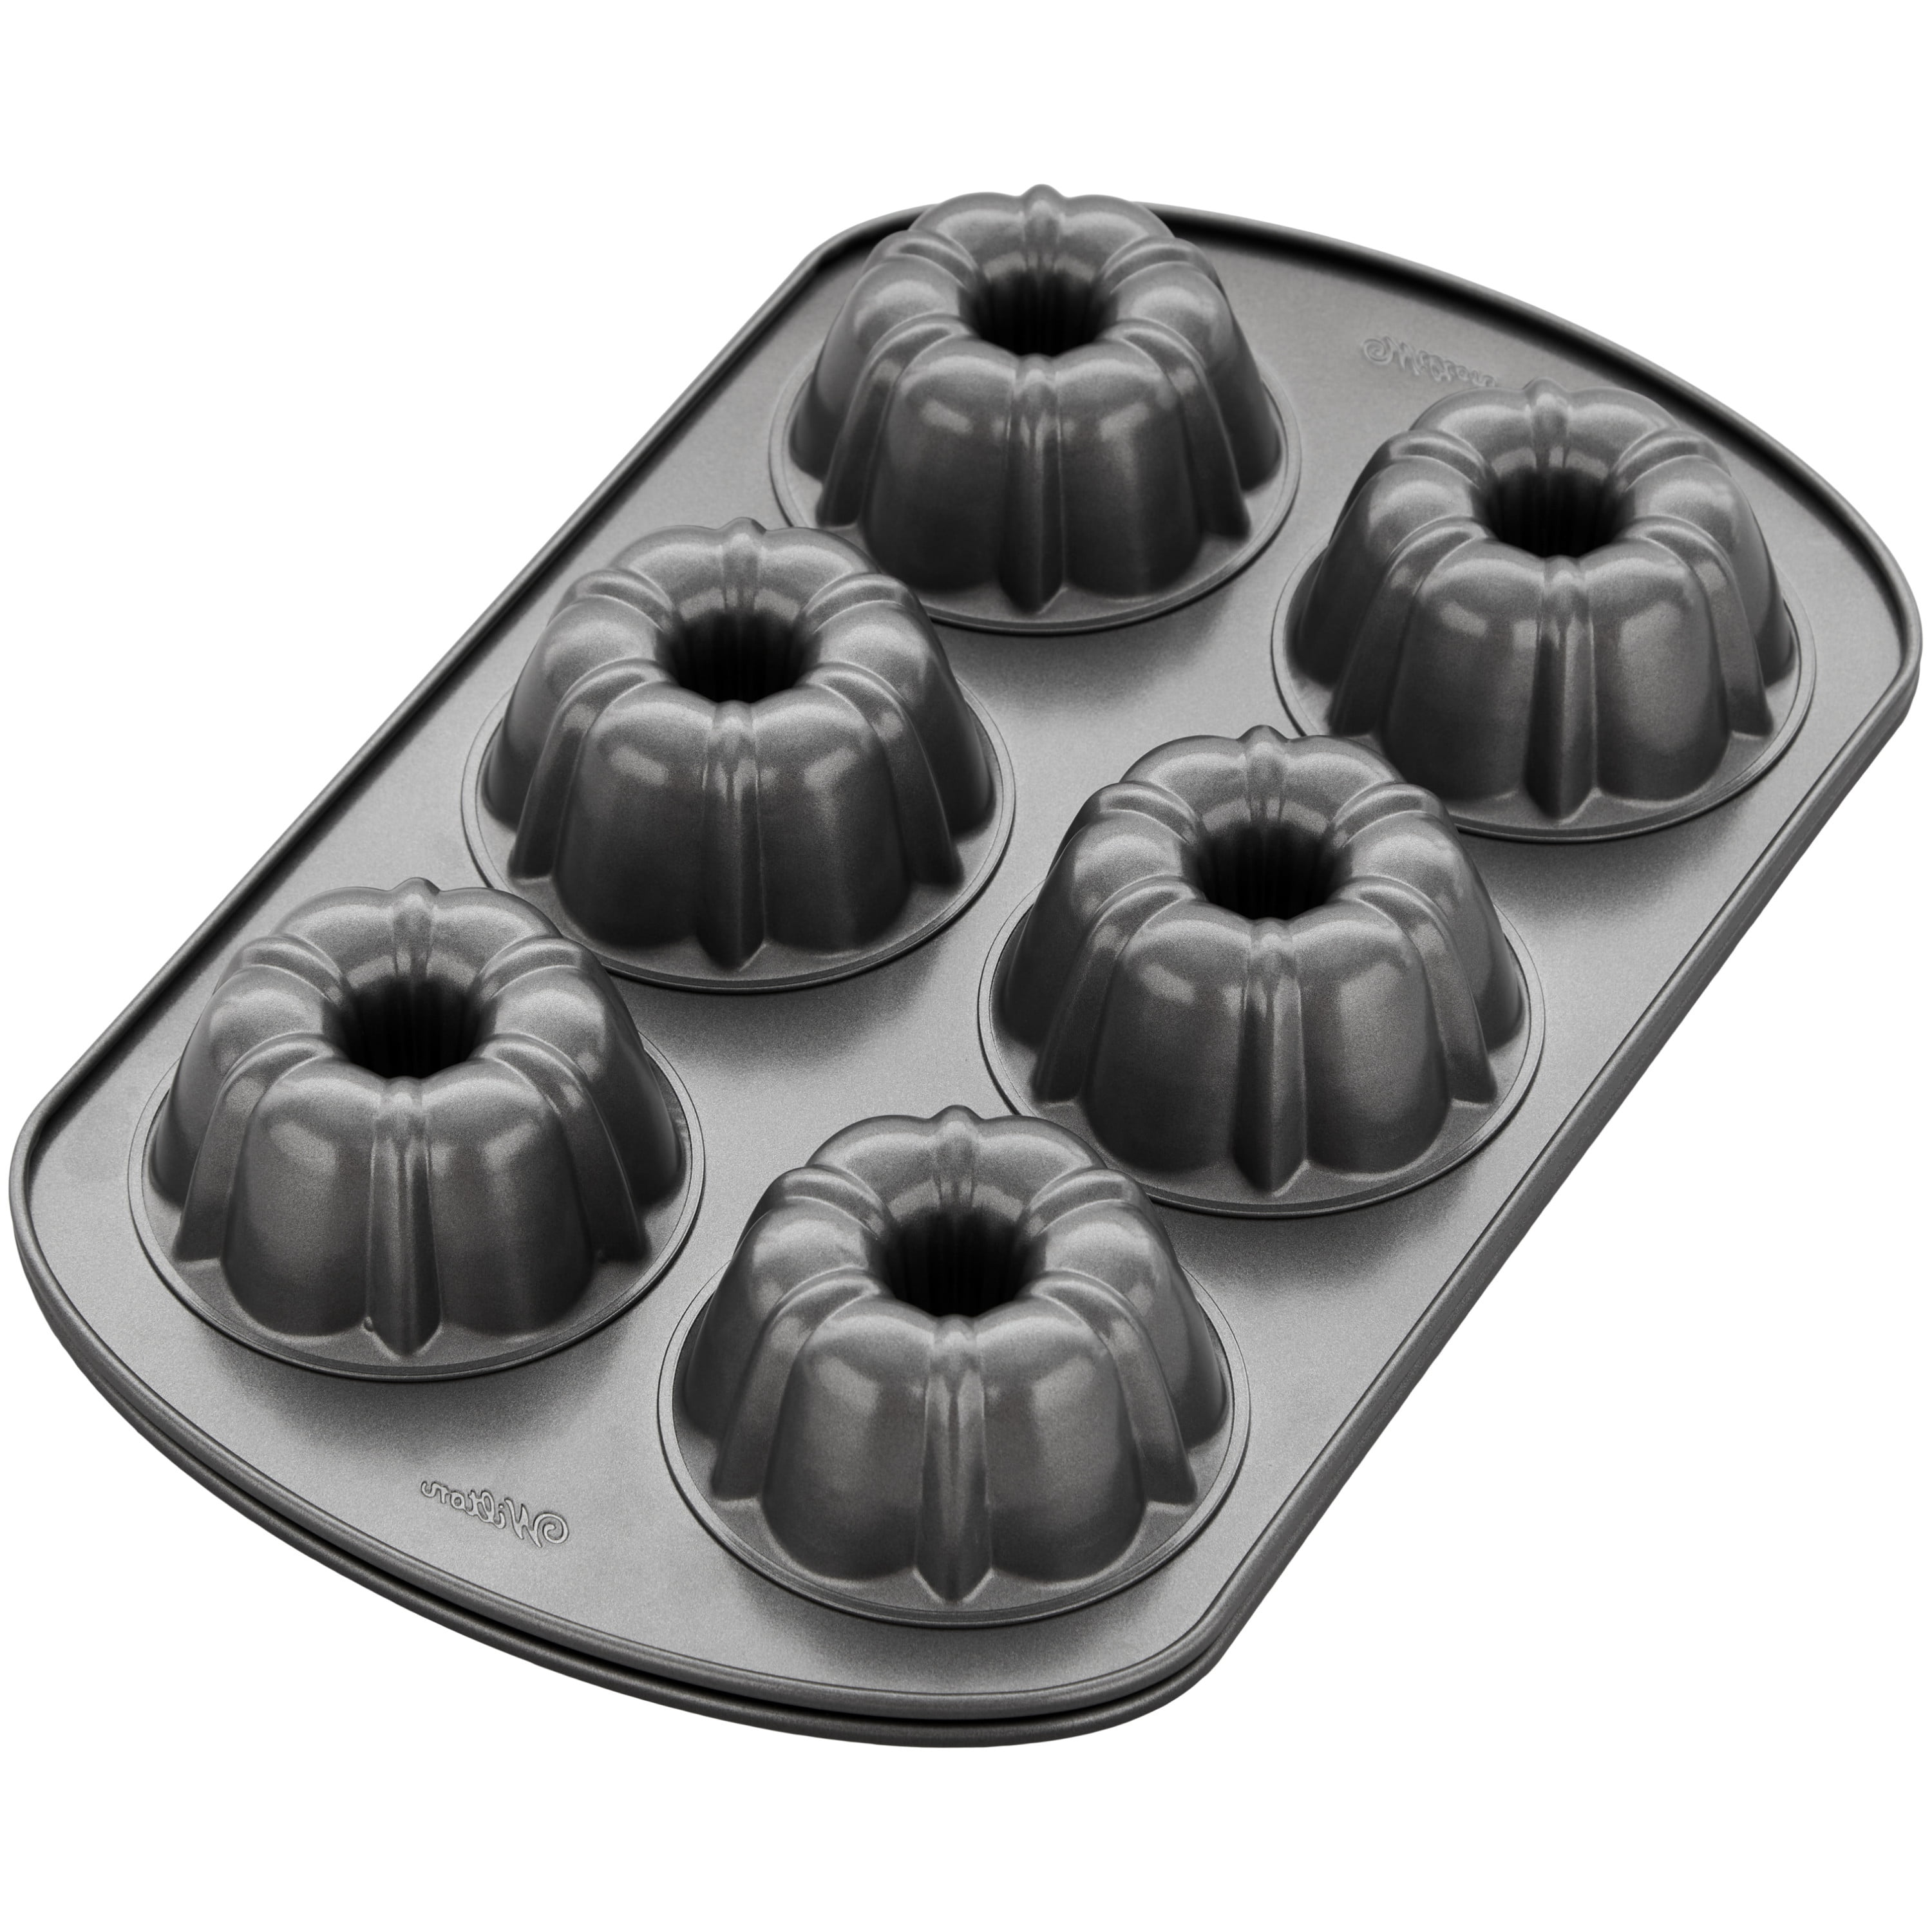 HUAKENER 2 Pcs Mini Bundt Cake Pan, 6-Cavity Fluted Tube Cake Pan,  Non-stick for